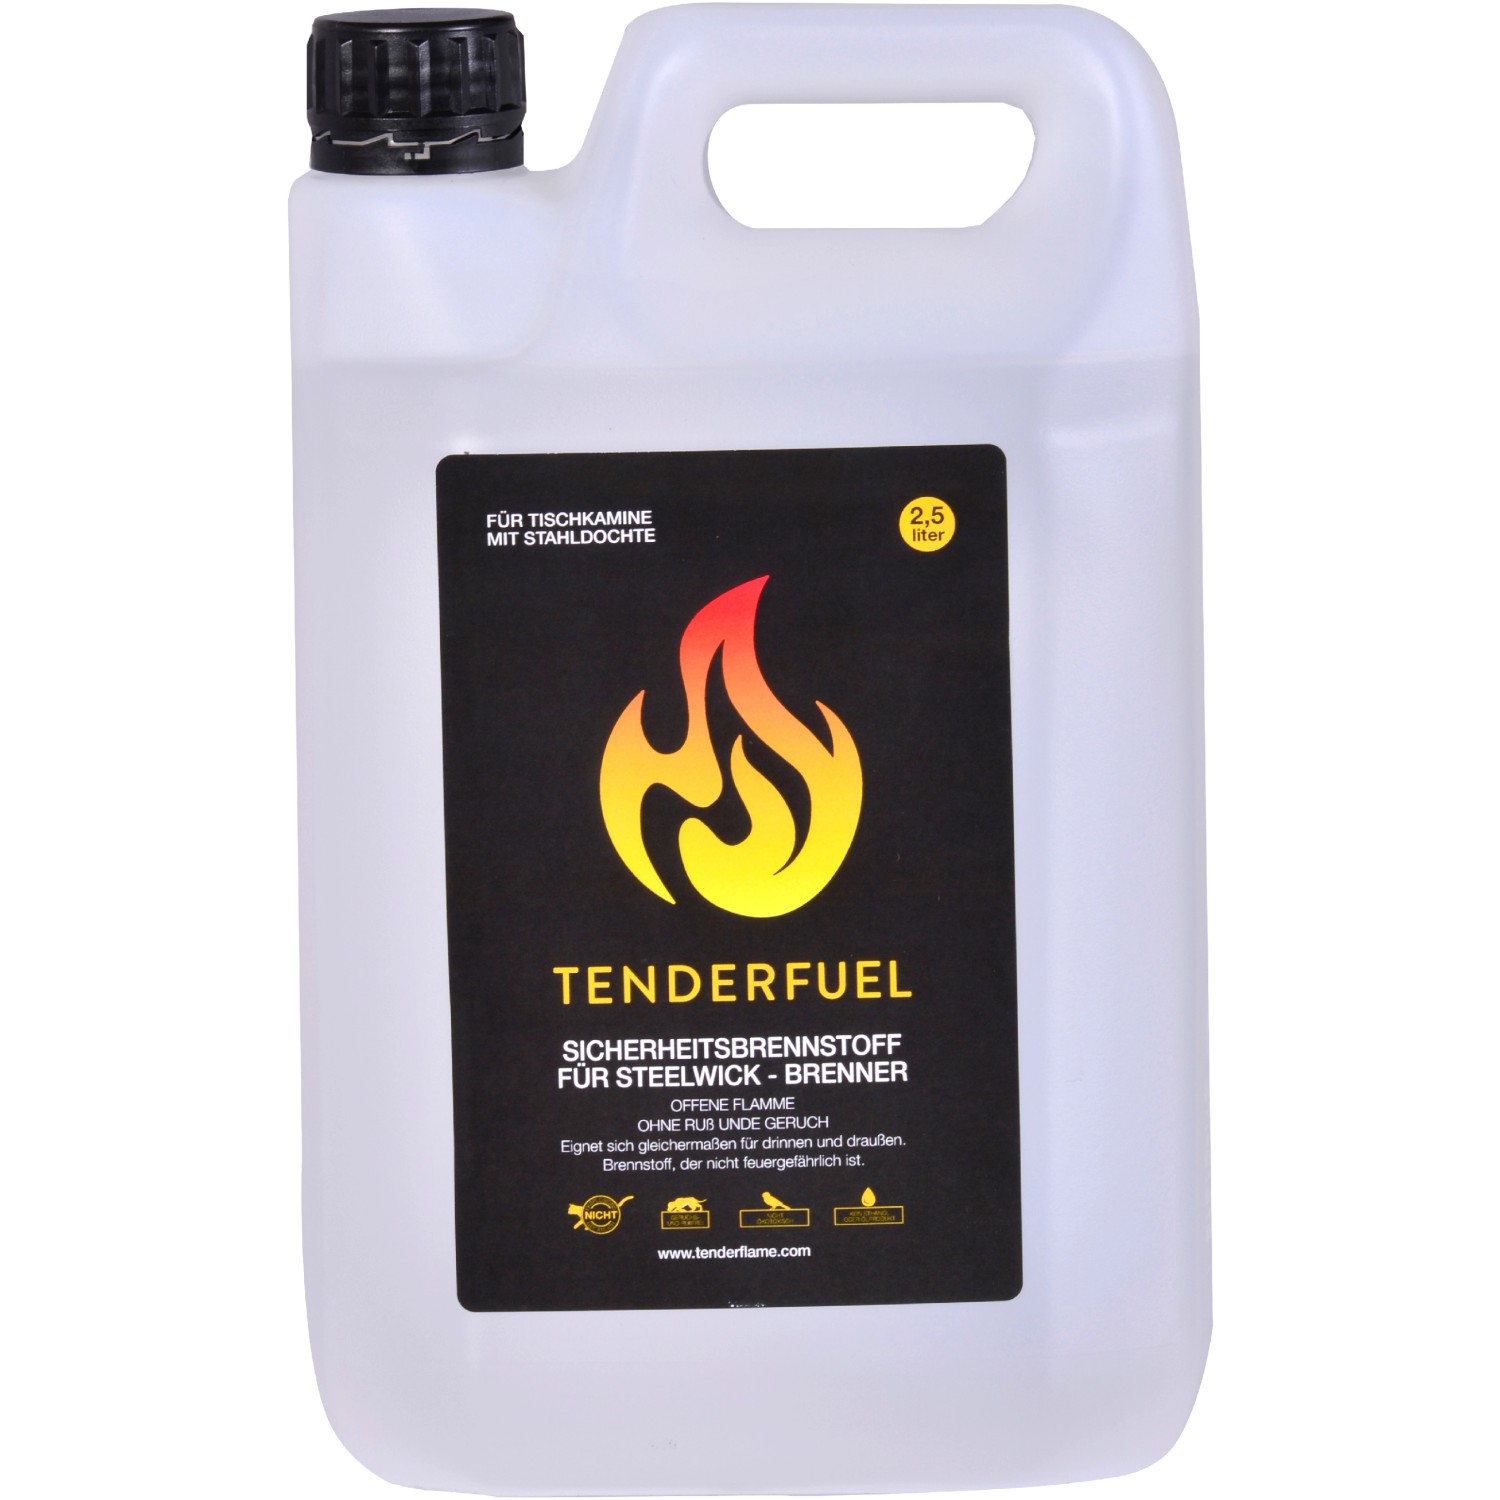 Sicherheitsbrennstoff Tenderfuel für Tenderflame Feuerstellen 2,5 l